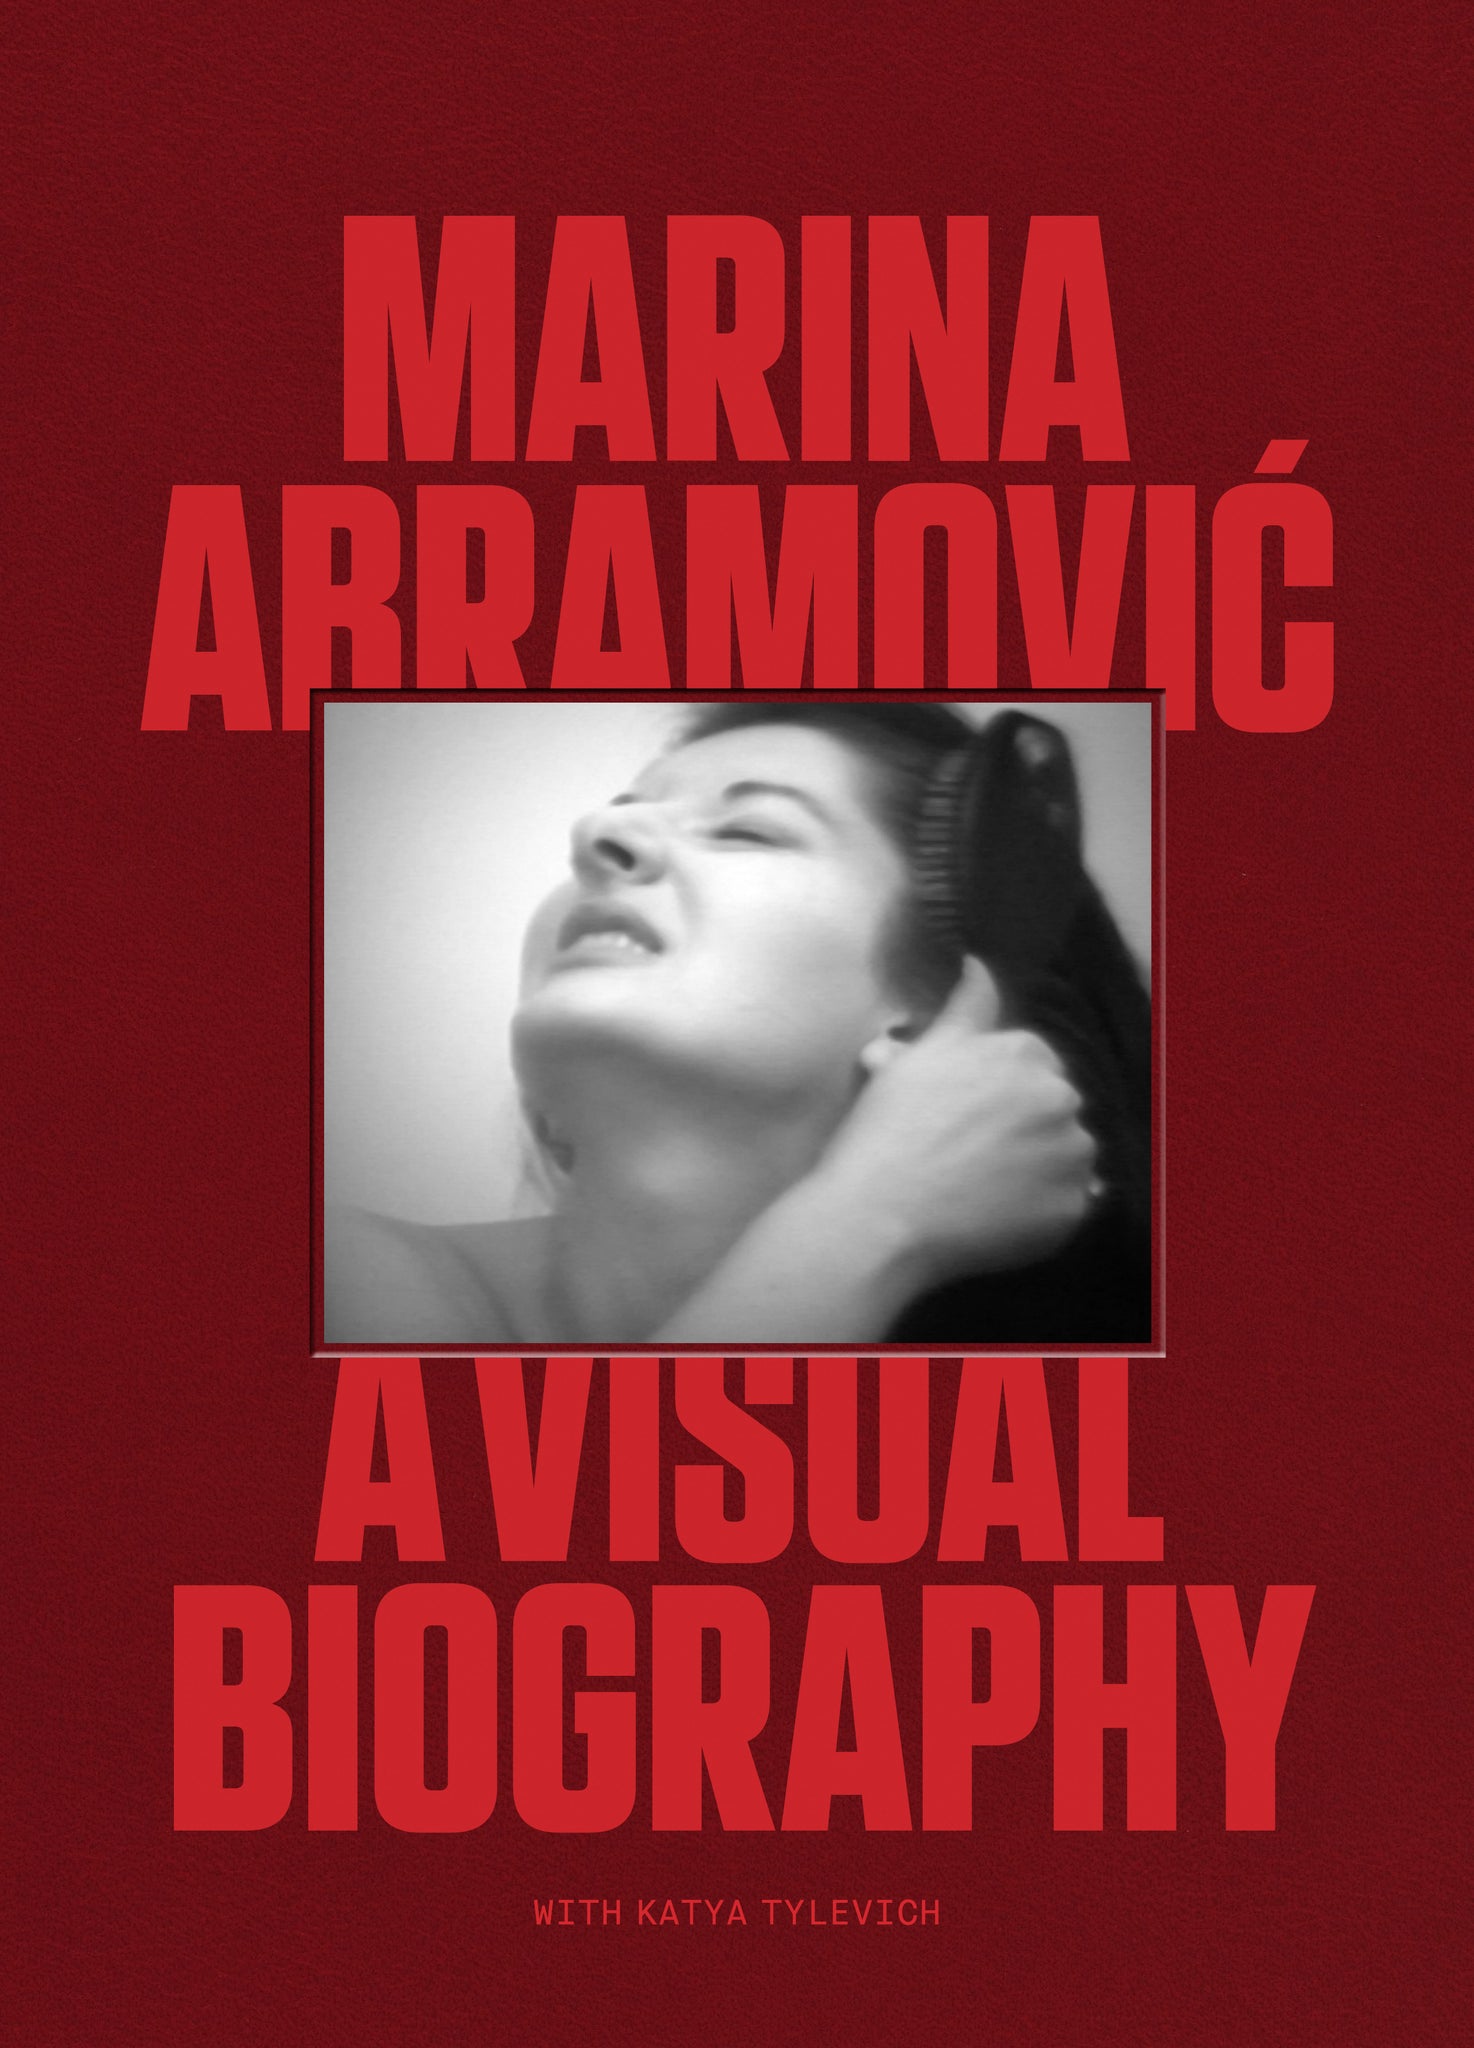 Marina Abramovic: A Visual Biography